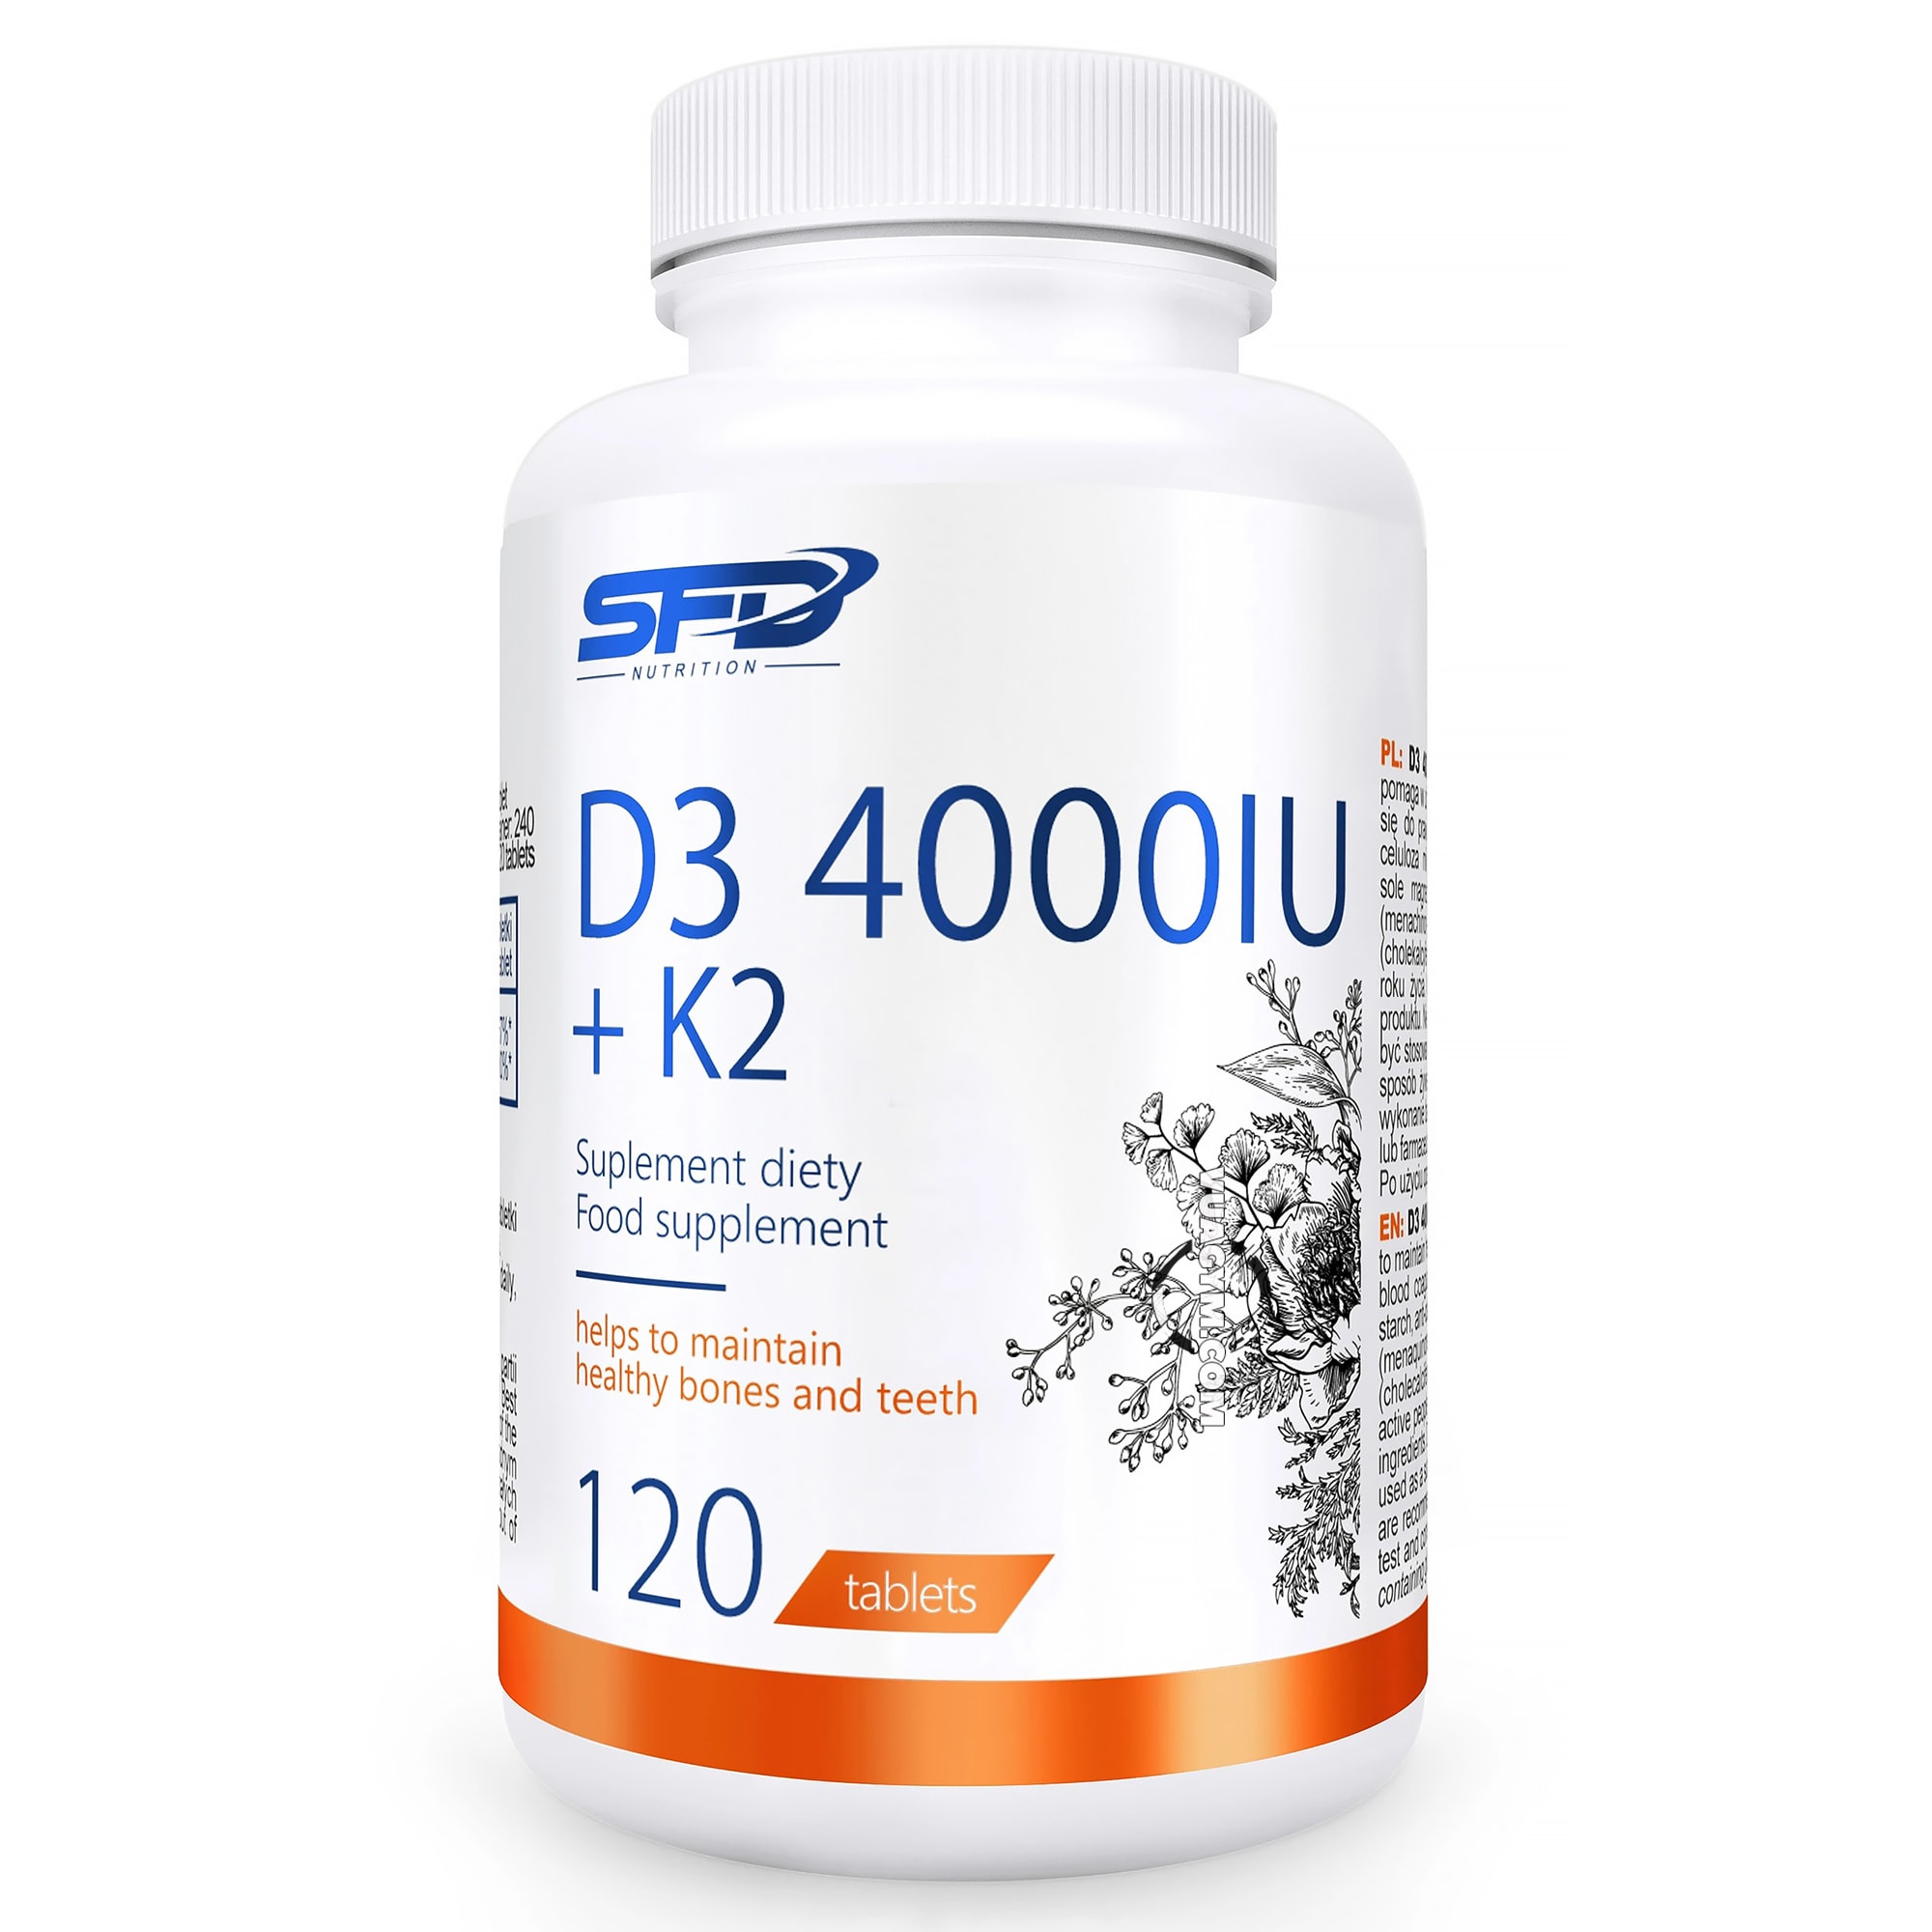 Vitamin D3 4000 IU có tác dụng phòng chống bệnh gì?
